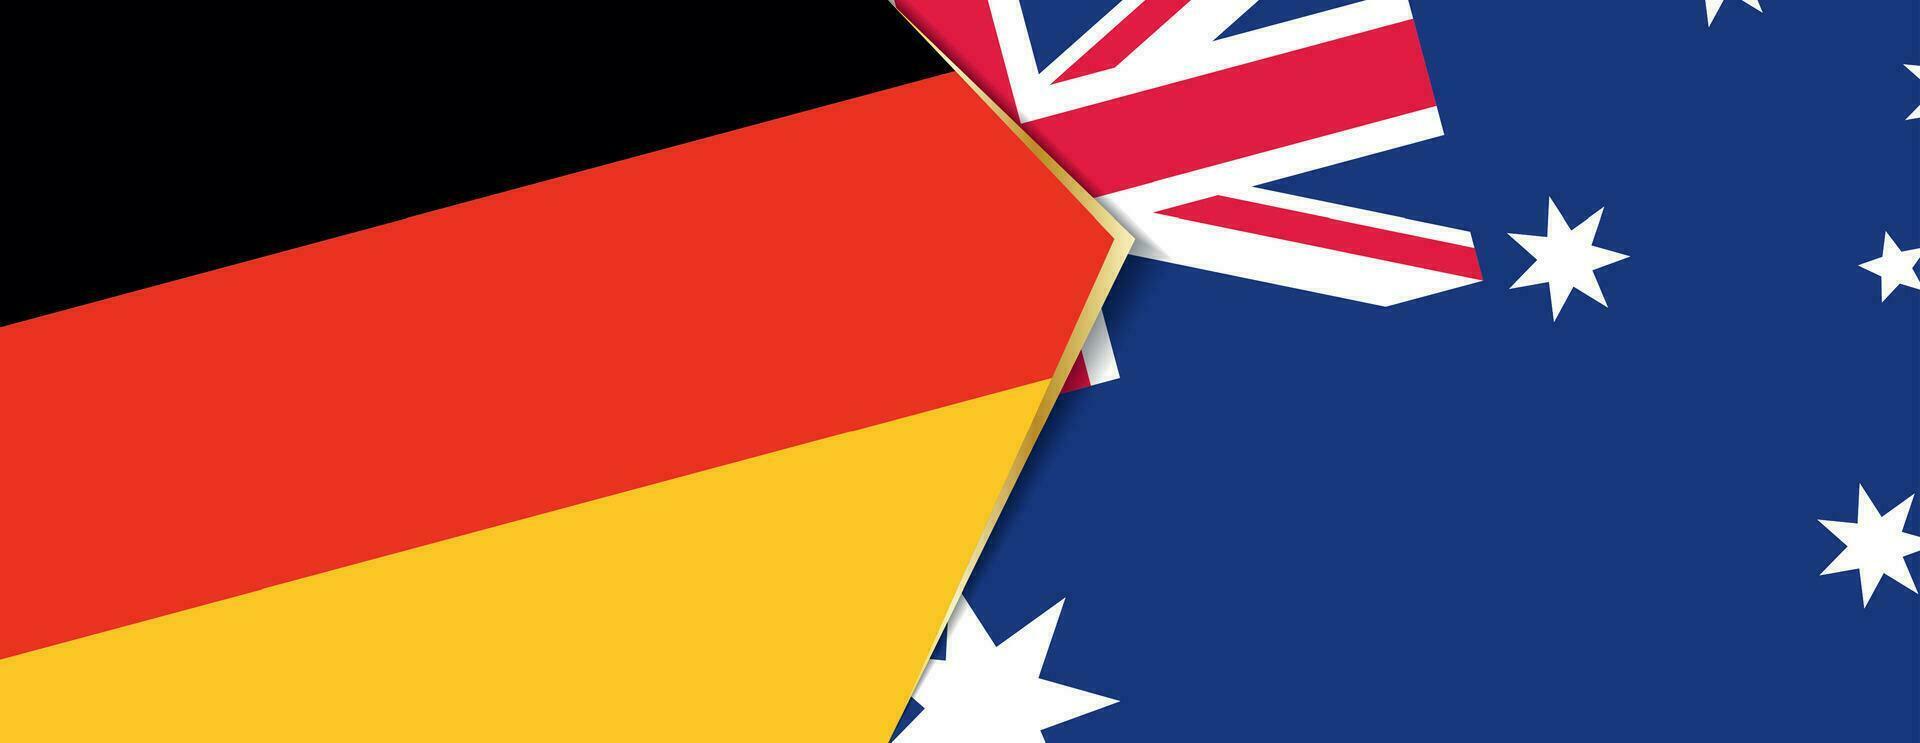 Alemania y Australia banderas, dos vector banderas